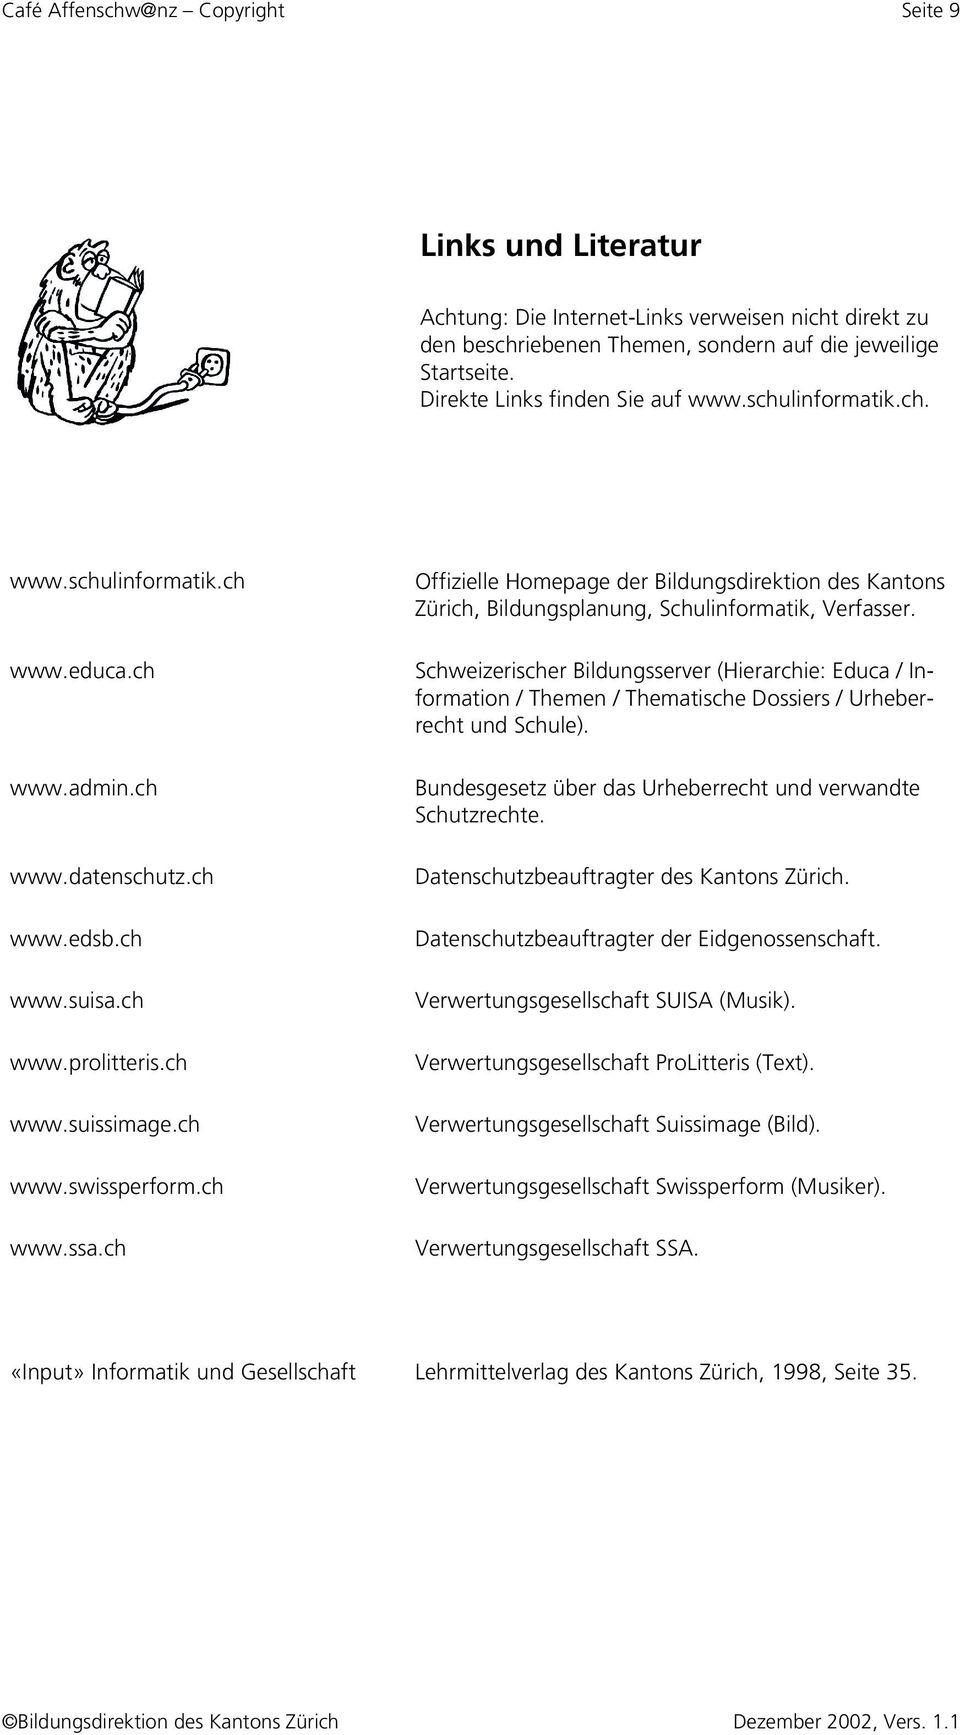 ch www.ssa.ch Offizielle Homepage der Bildungsdirektion des Kantons Zürich, Bildungsplanung, Schulinformatik, Verfasser.